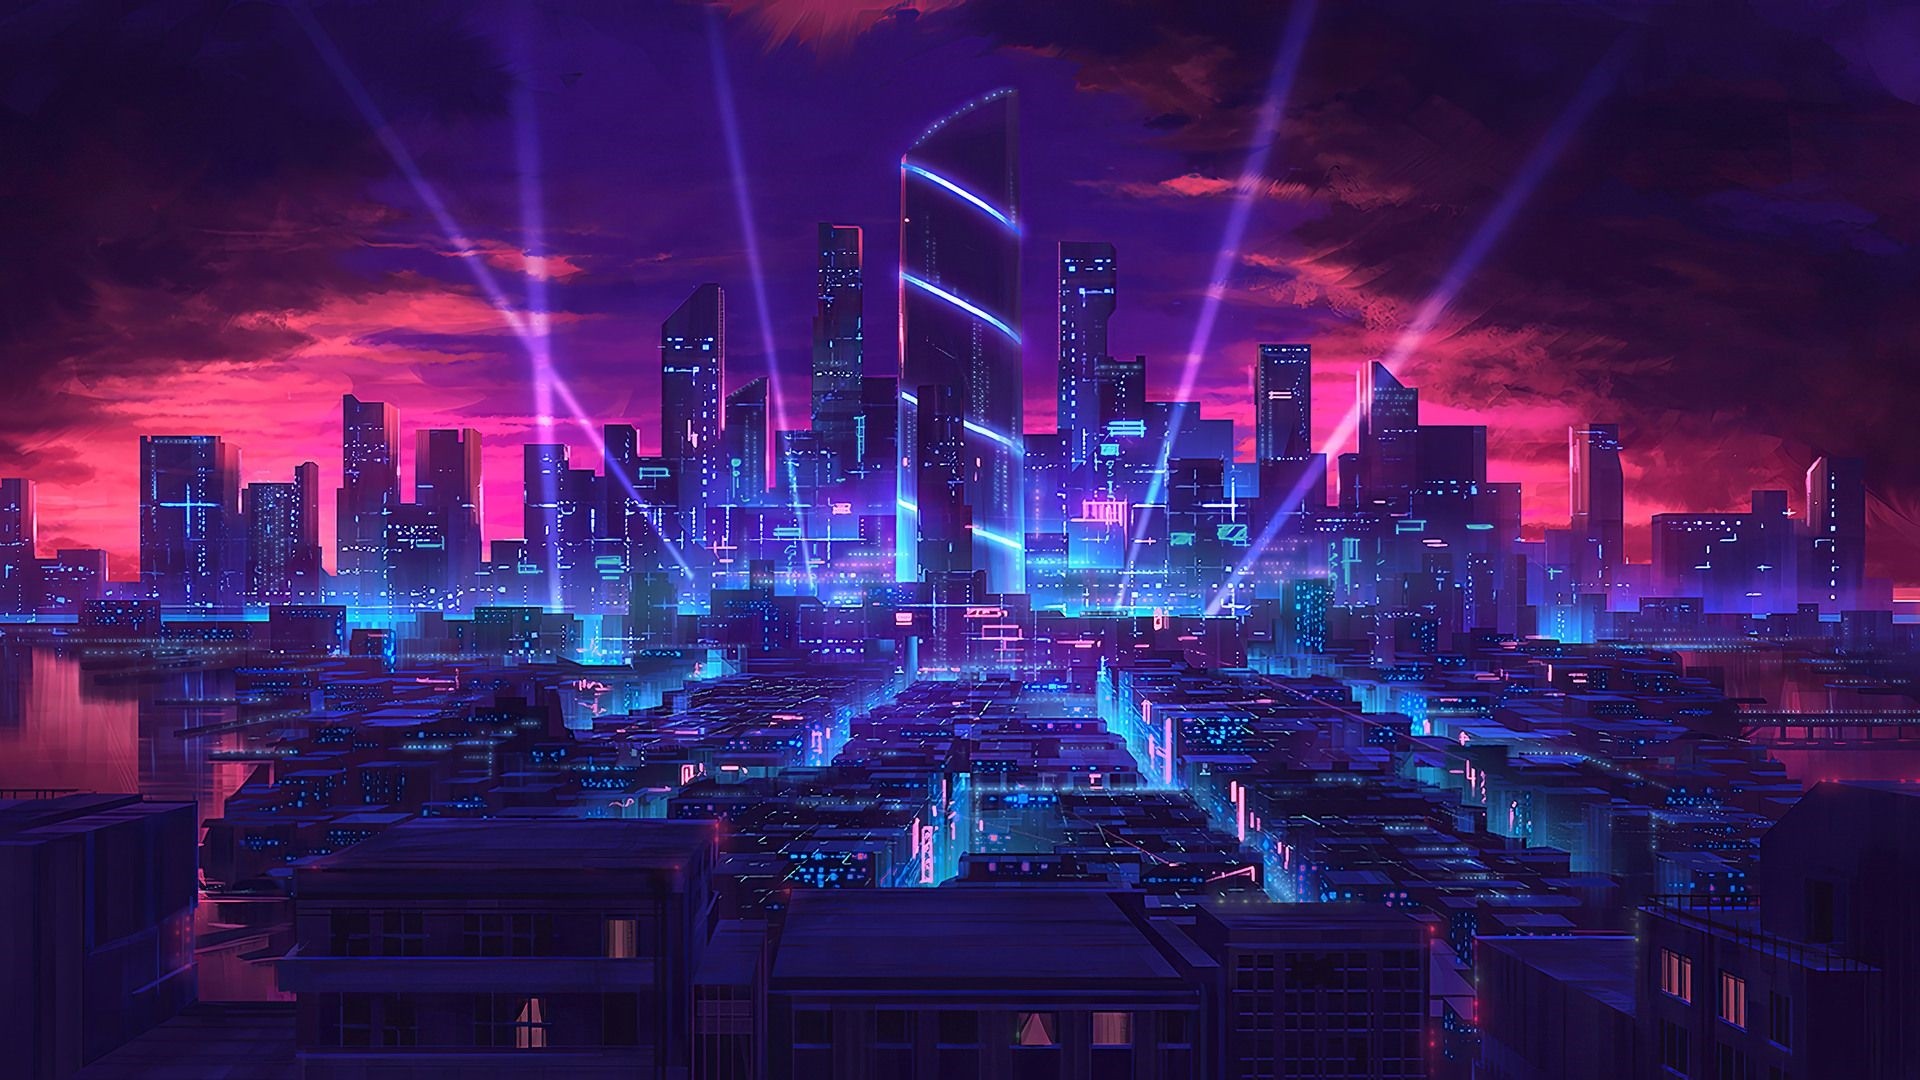 Anime Night Neon Image